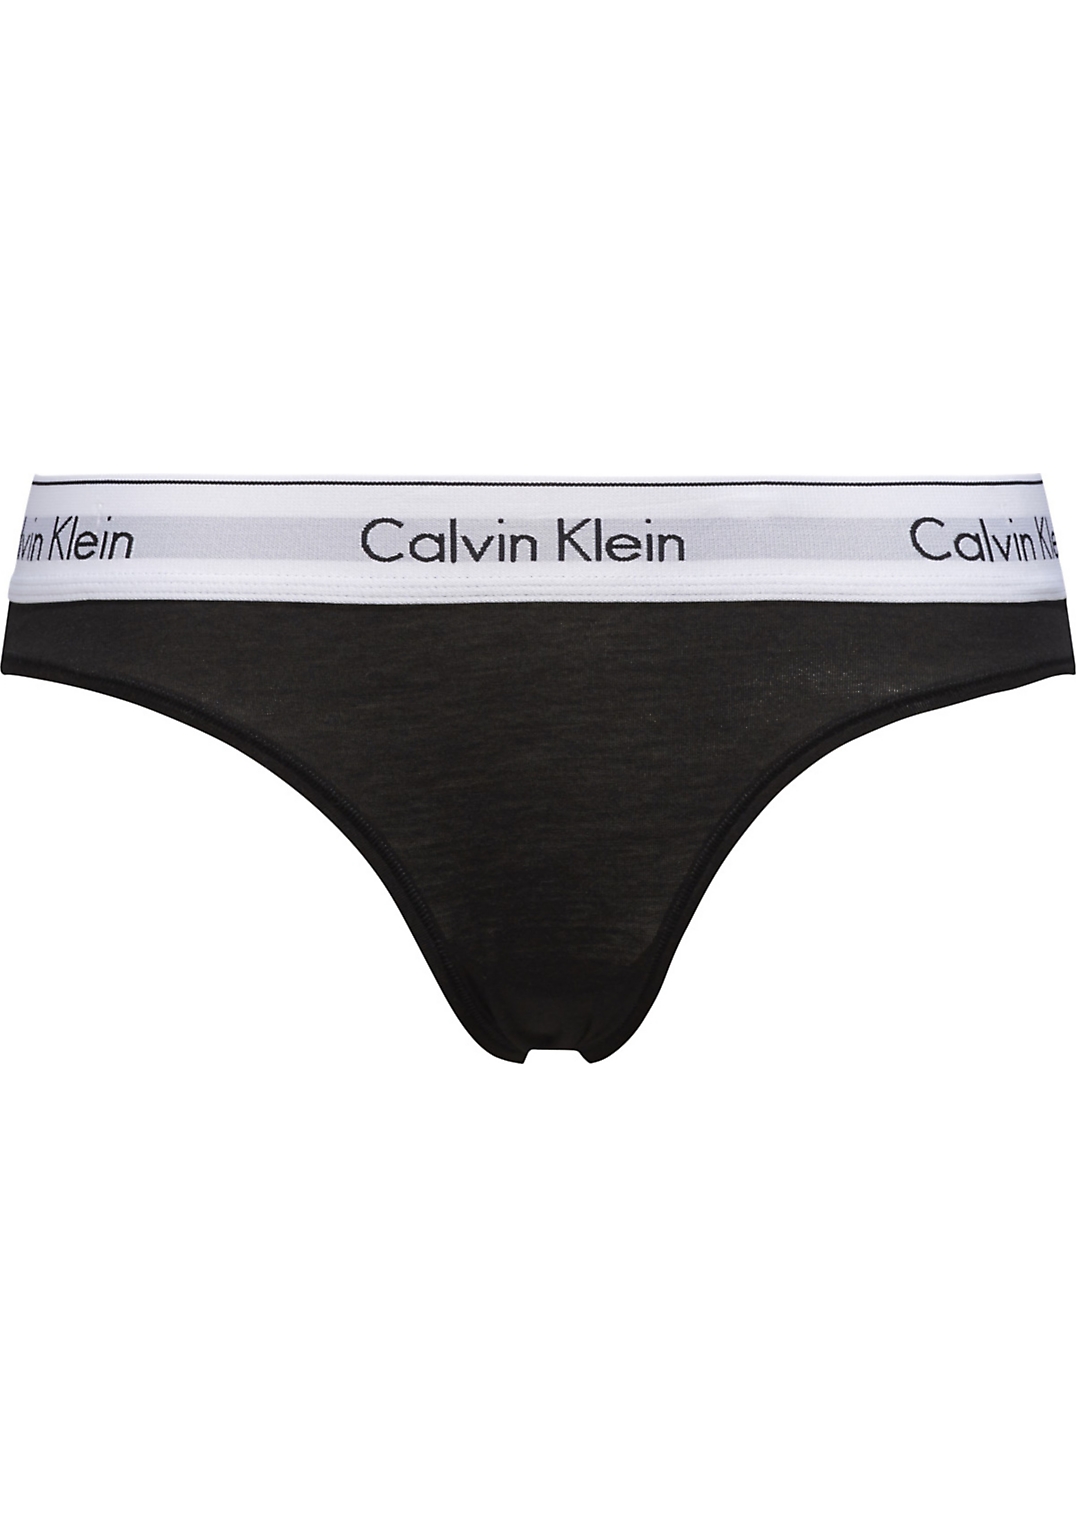 tand overdracht Kruiden Calvin Klein dames Modern Cotton slip, zwart - Shop de nieuwste  voorjaarsmode